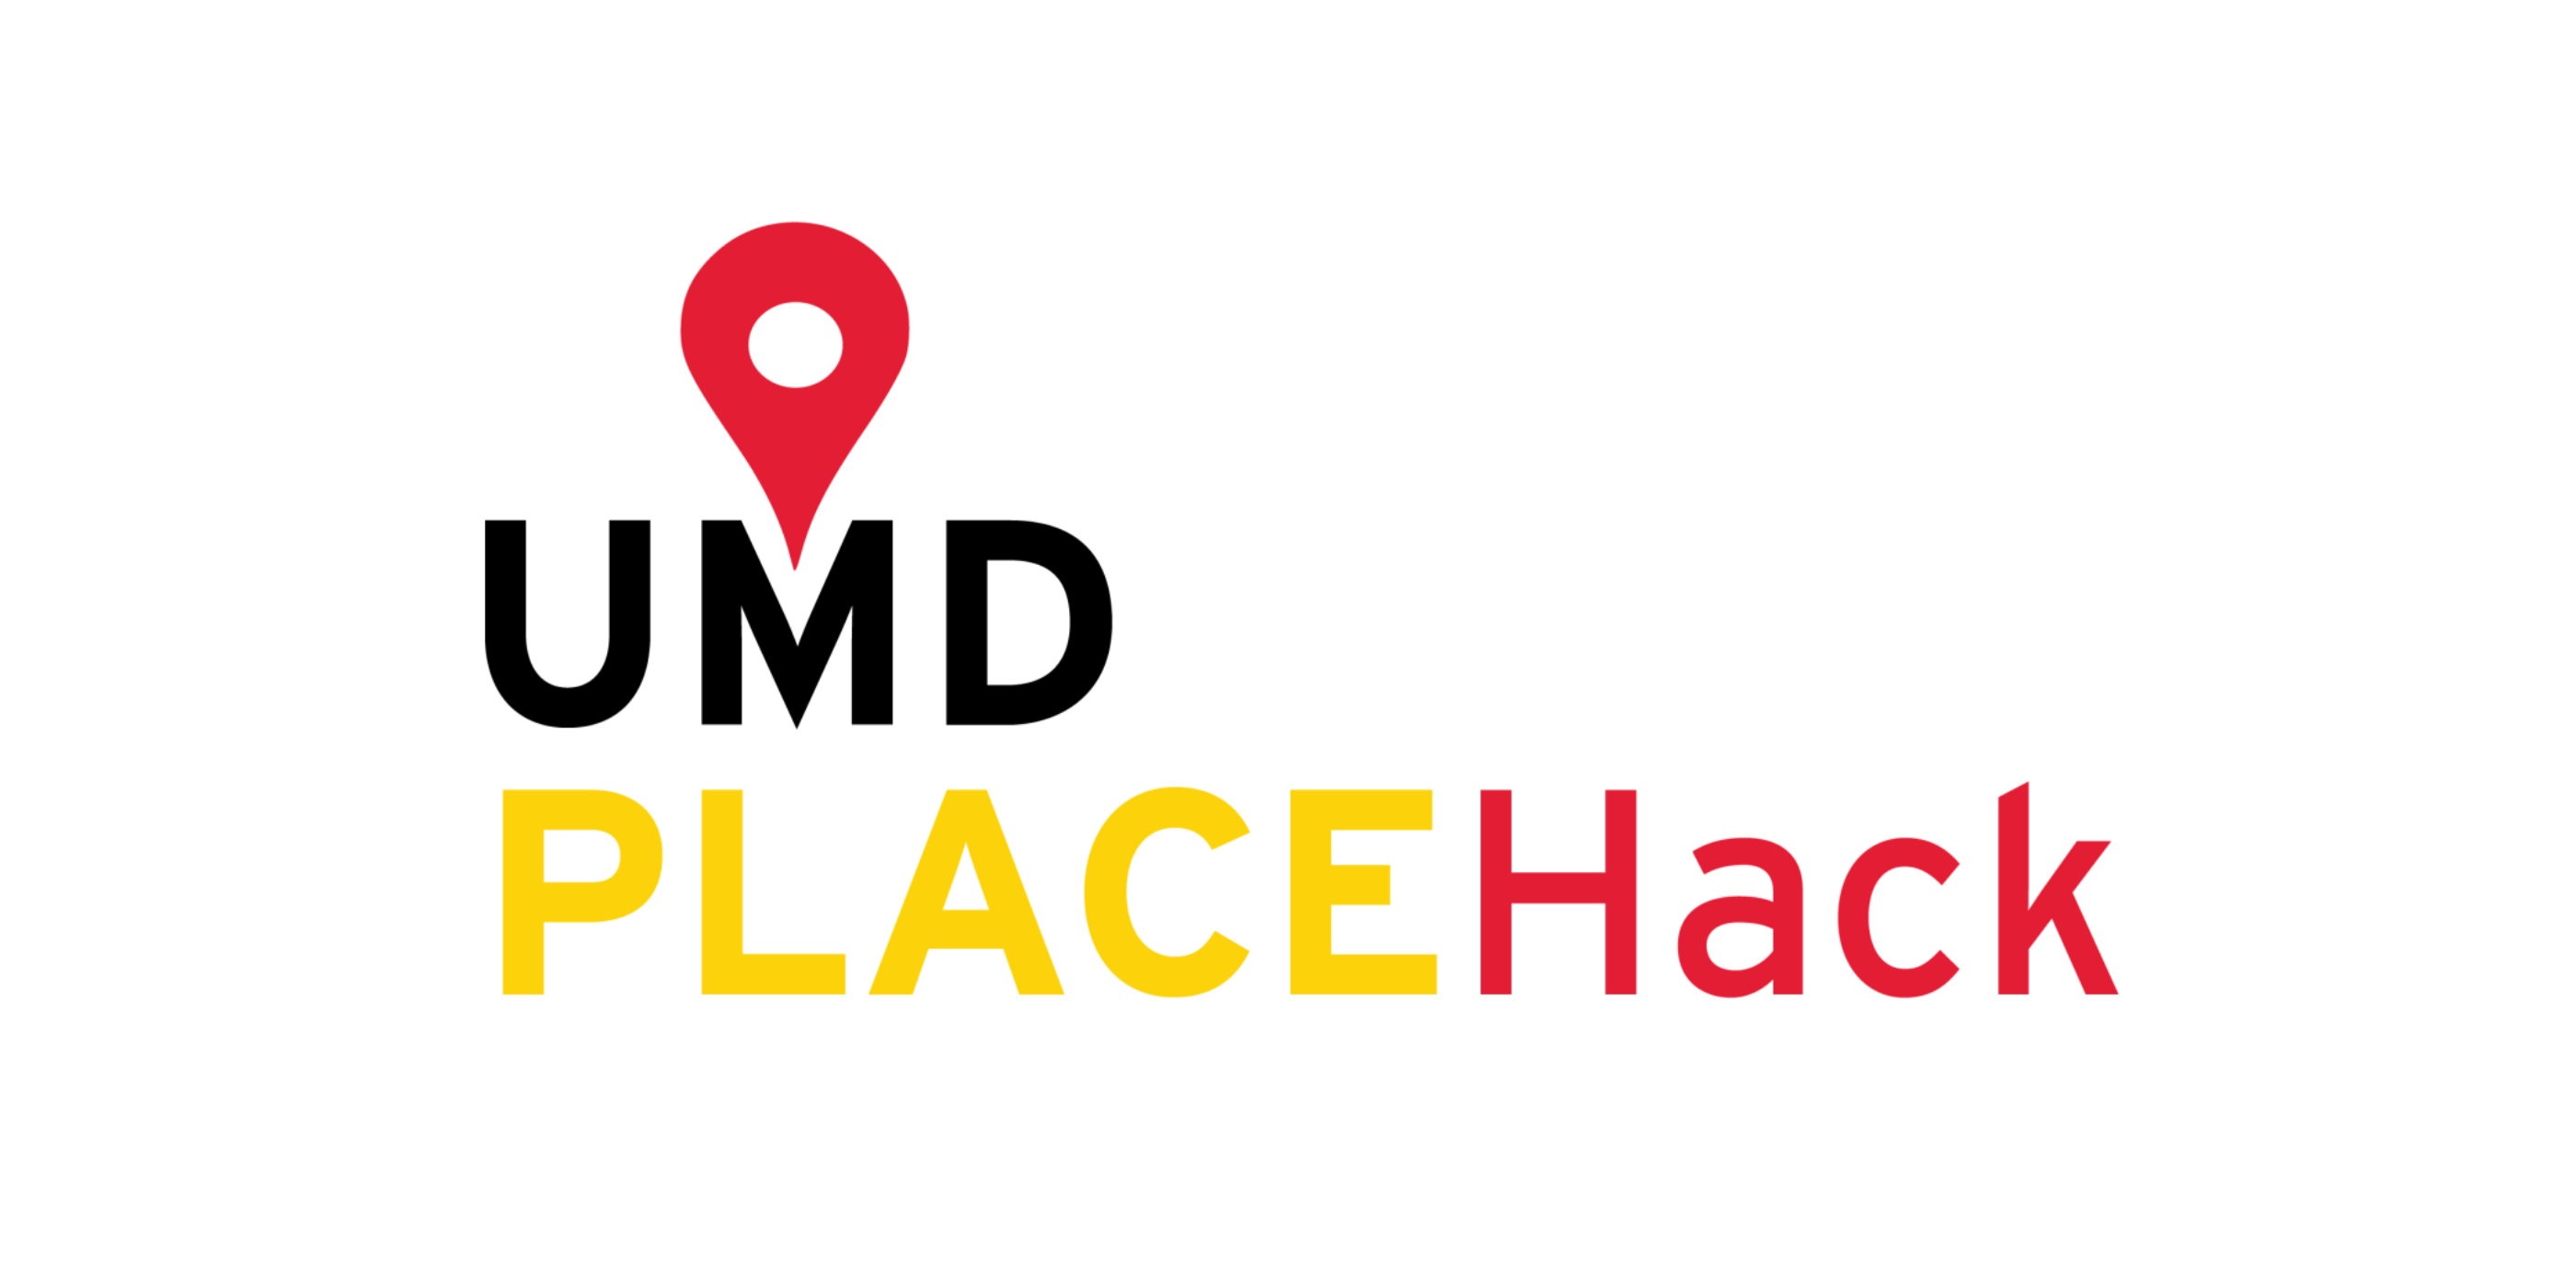 UMD Place Hack logo